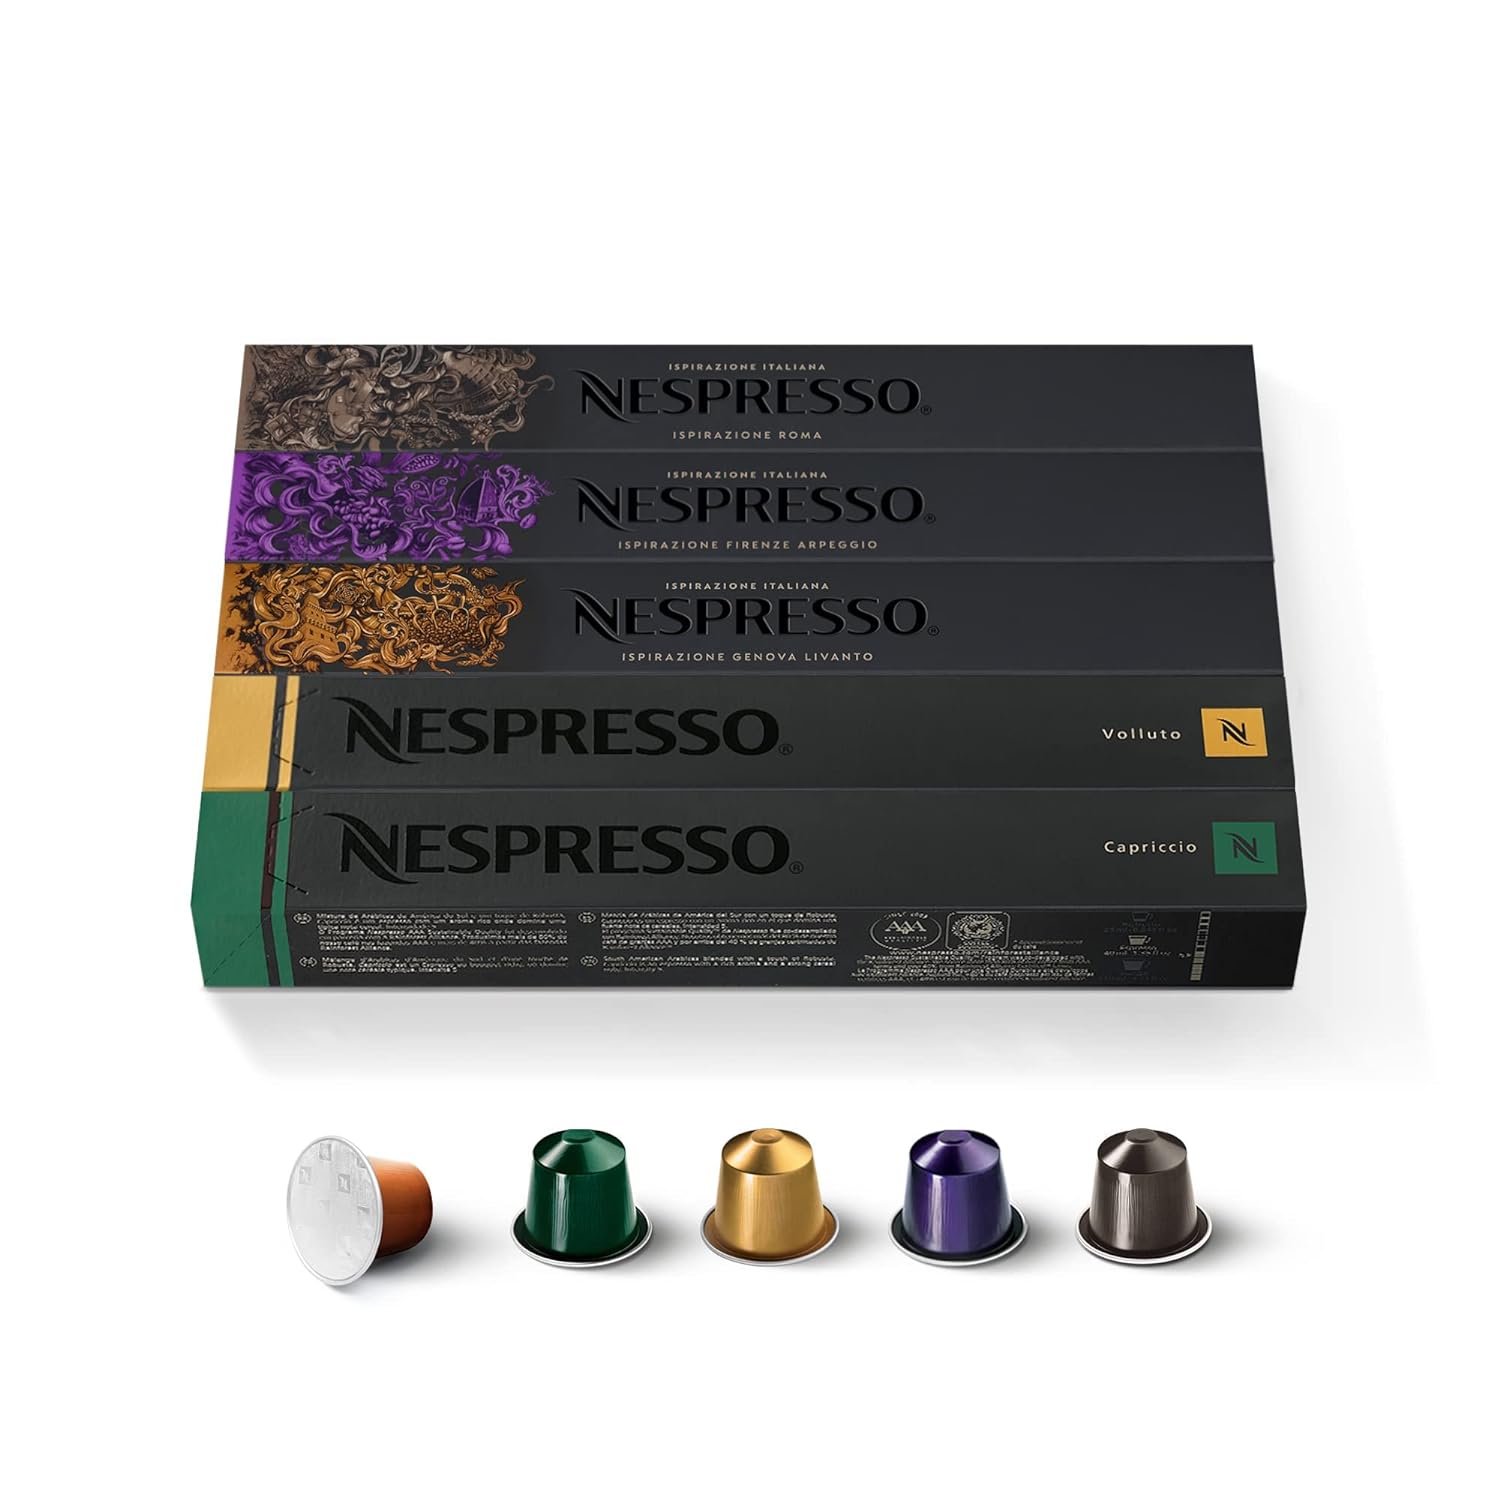 NESPRESSO ORIGINAL, Auswahl an Espresso Kaffees, Helle bis dunkle Röstungen, Kompatibel mit ORIGINAL Kaffeemaschinen, Kapsel Set aus 50 Kaffeekapseln